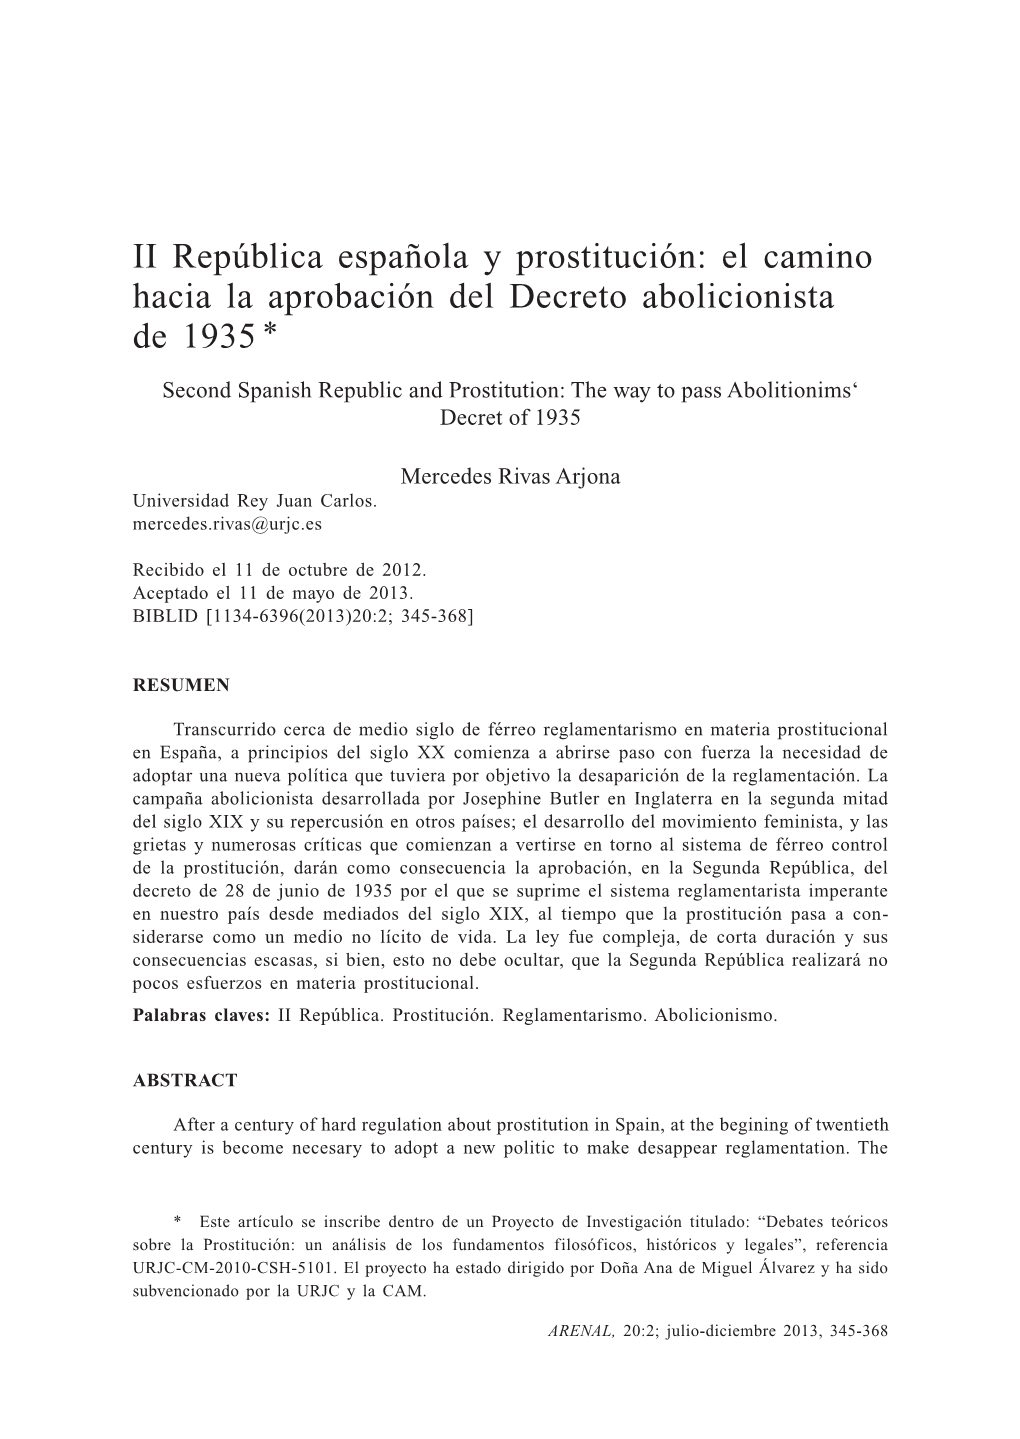 II República Española Y Prostitución: El Camino Hacia La Aprobación Del Decreto Abolicionista De 1935 *